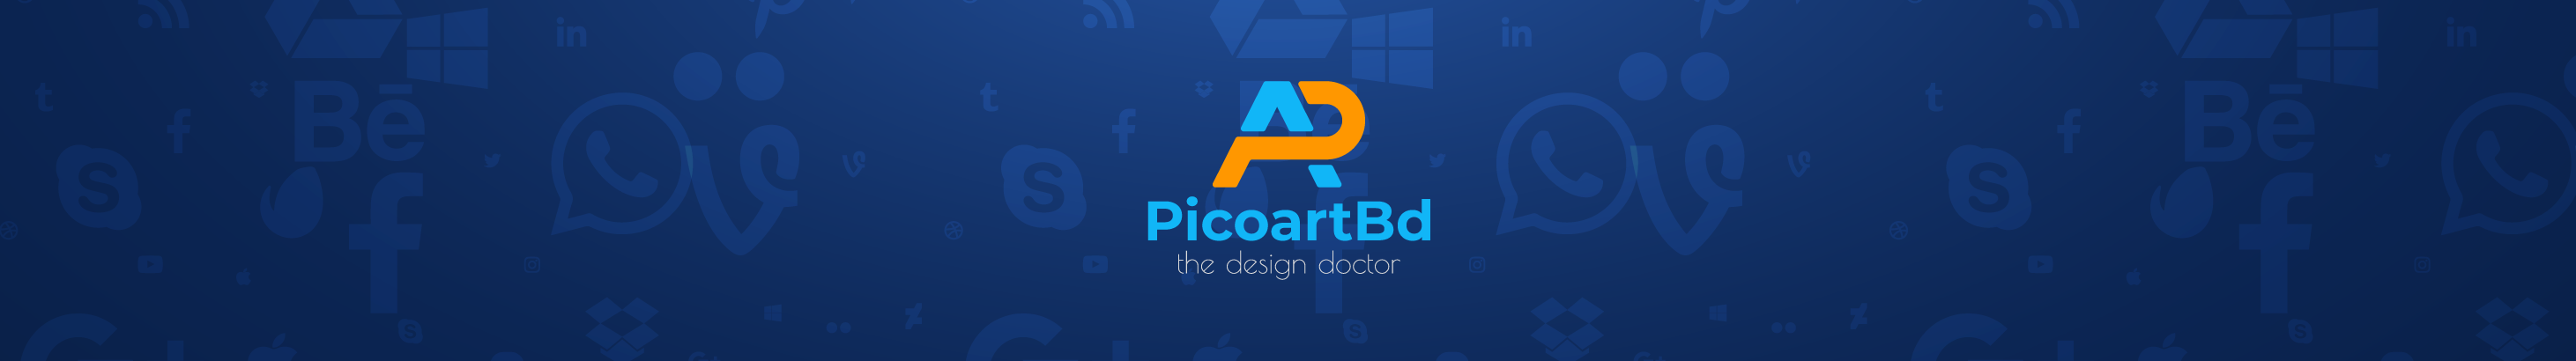 Banner de perfil de Picoart Bd